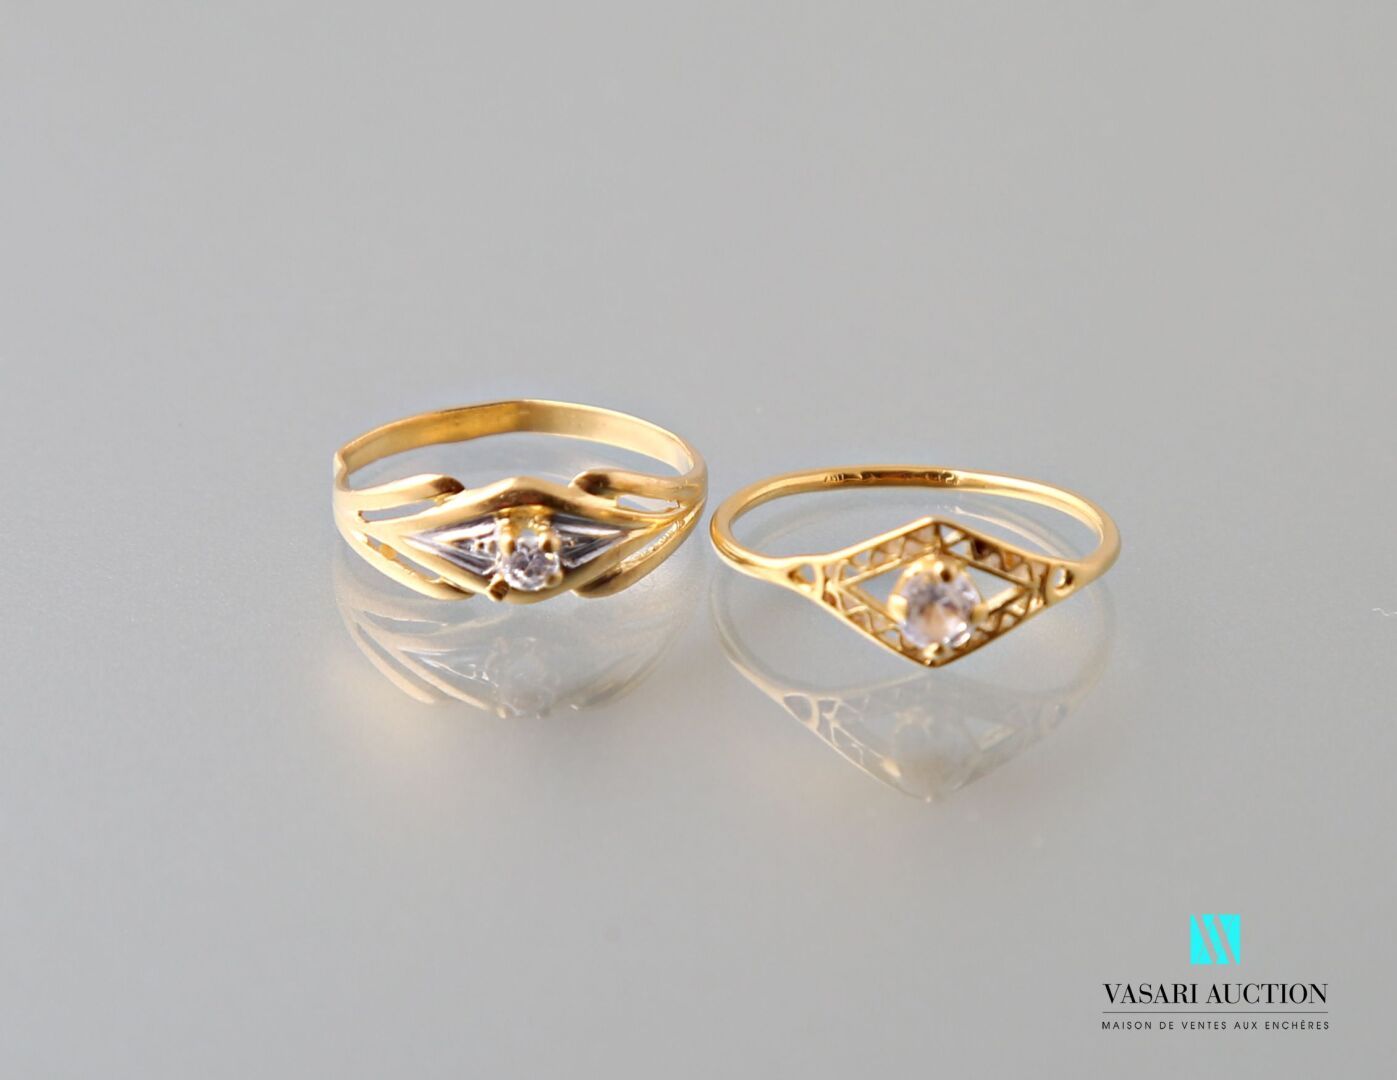 Null 两枚75万分之一黄金戒指，镂空钻石图案，镶嵌白色宝石
重量 : 2,5 g
(一个变形的环)